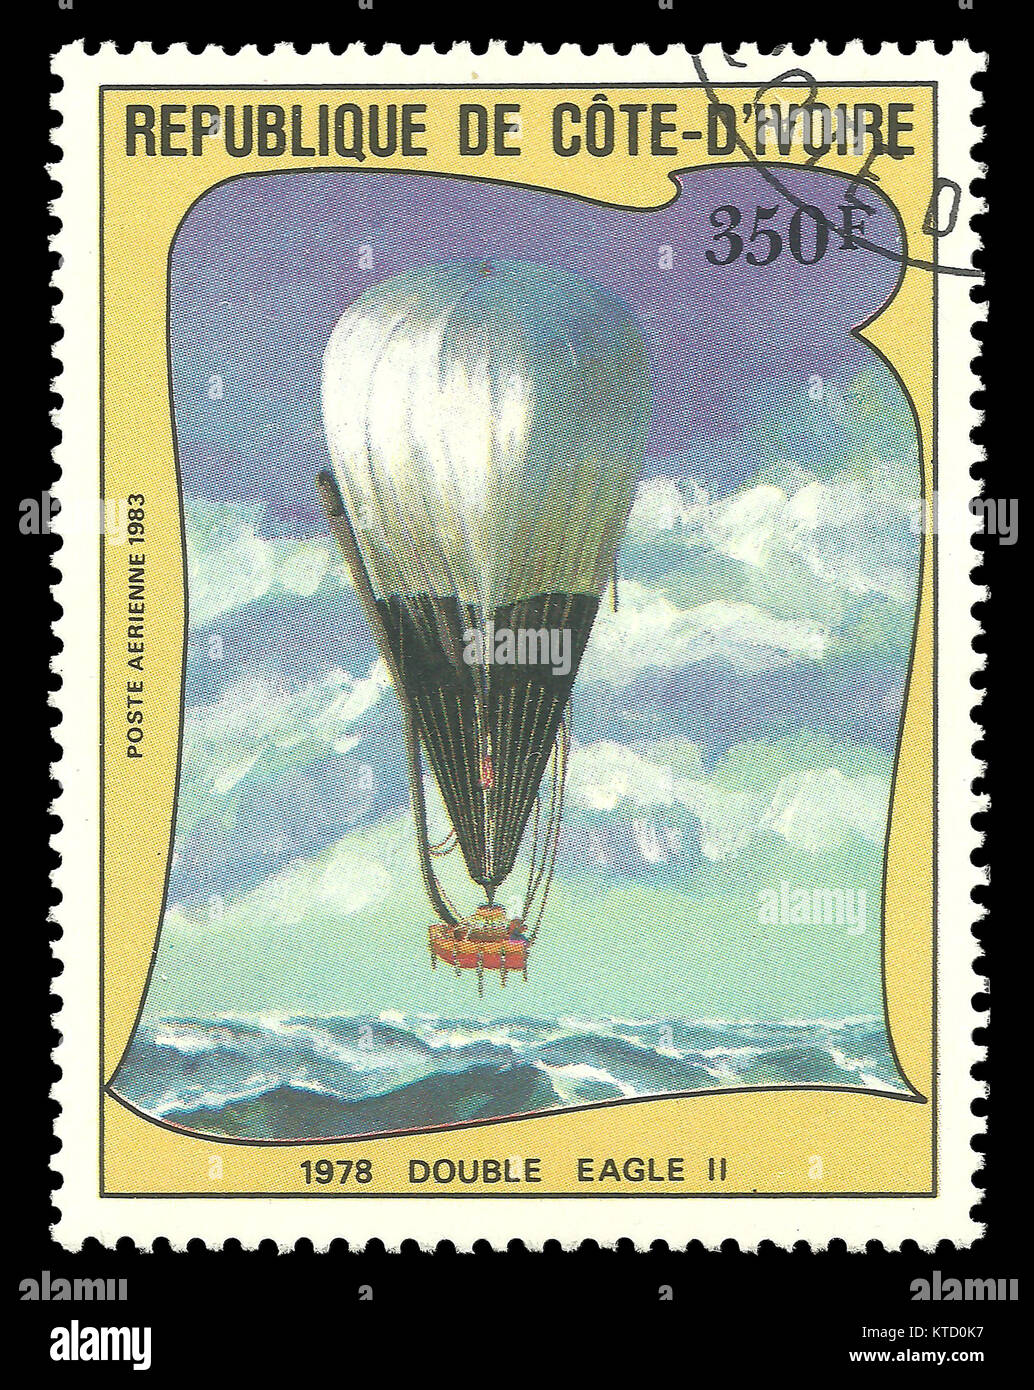 Costa d'Avorio - timbro1983: Edizione di colore sul tema del Bicentenario della prima salita in un palloncino, mostra1978 Double Eagle II Foto Stock